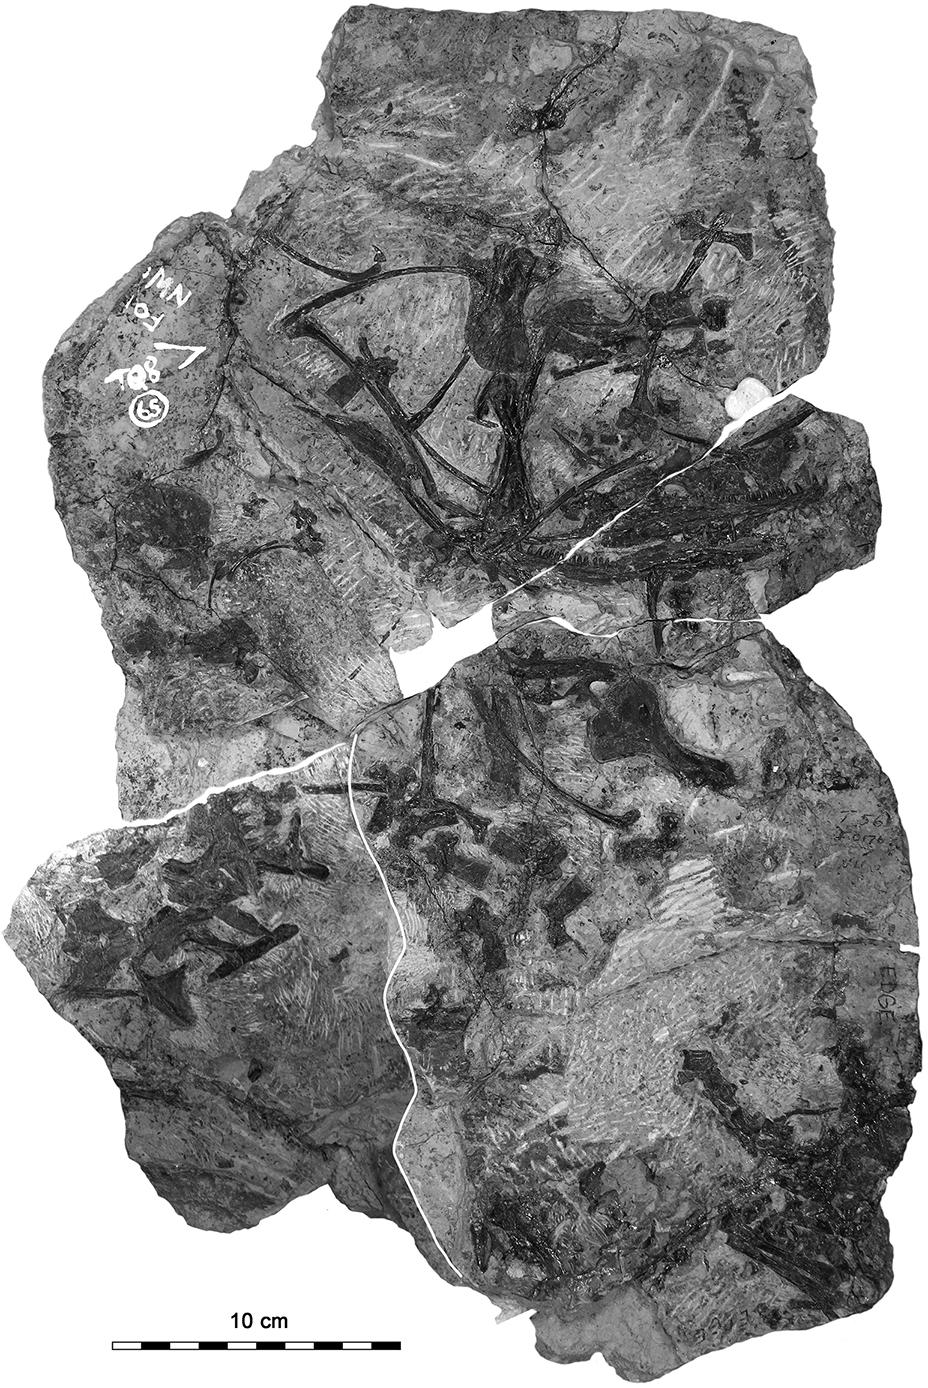 20 F. Spindler et al.: New information on Ianthodon Figure 2.